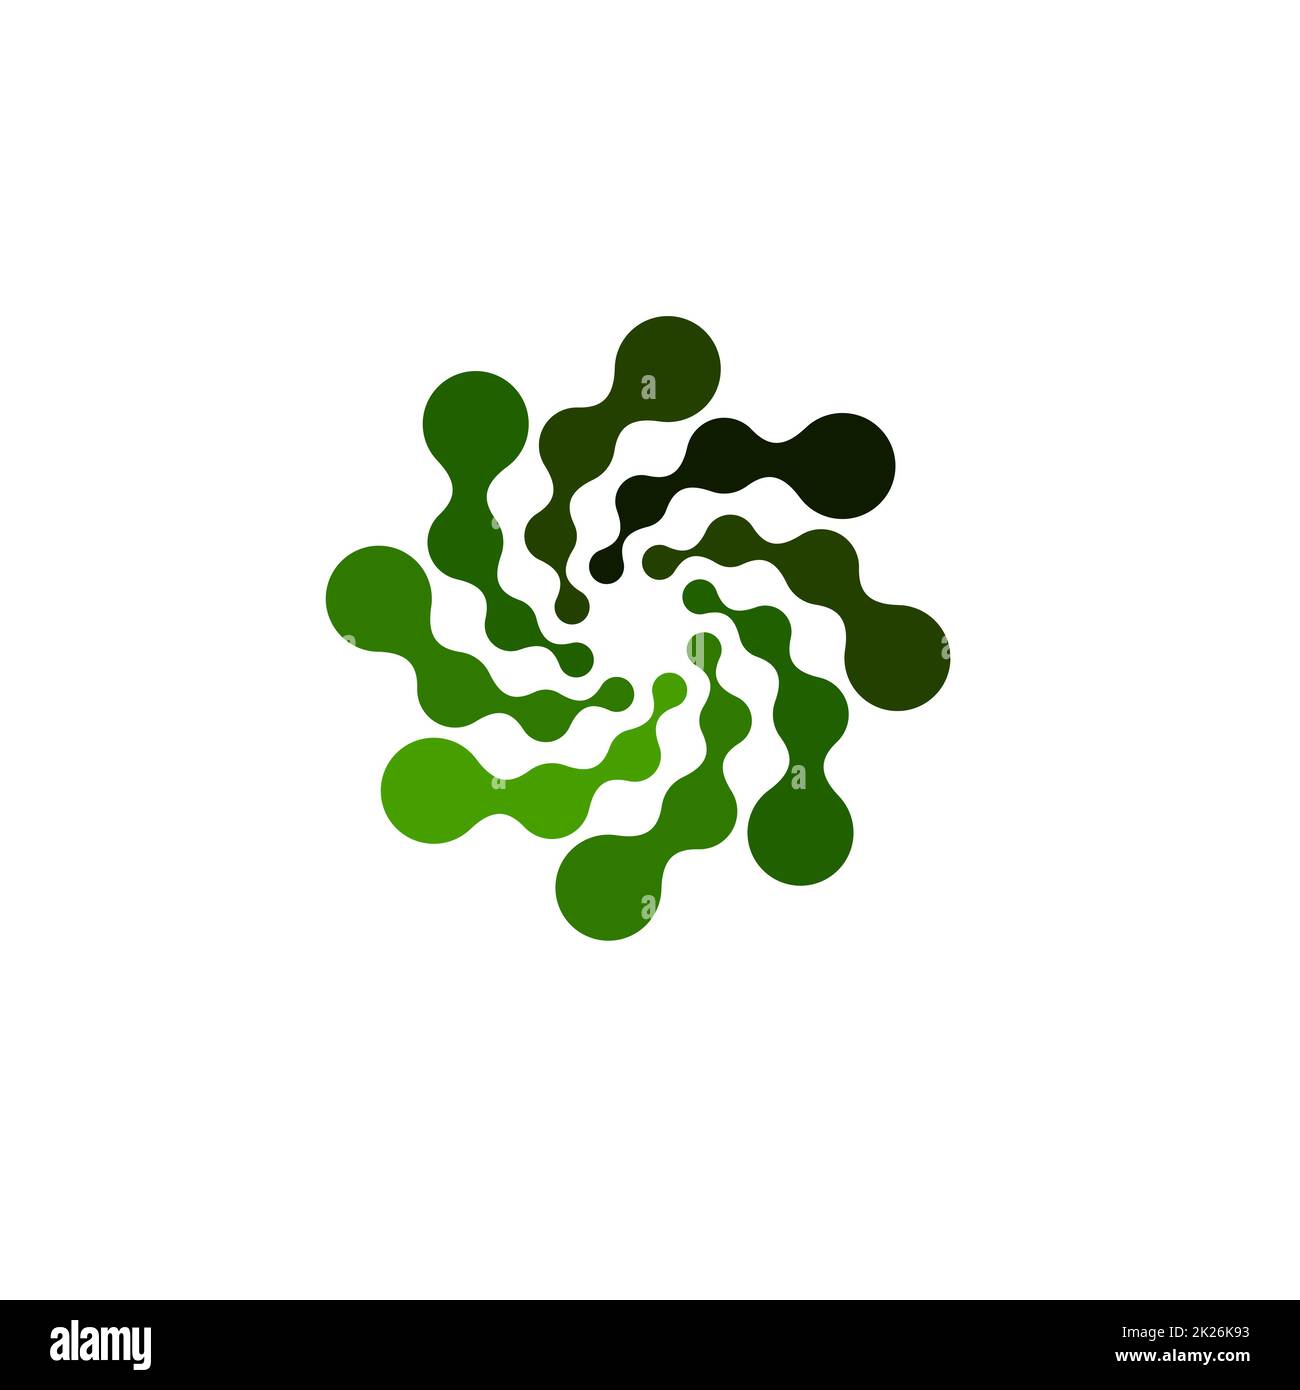 Isoliertes abstraktes grünes, rundes Logo auf weißem Hintergrund, einfaches, flaches, wirbeliges Logo der verbundenen Punkte Vektordarstellung Stockfoto